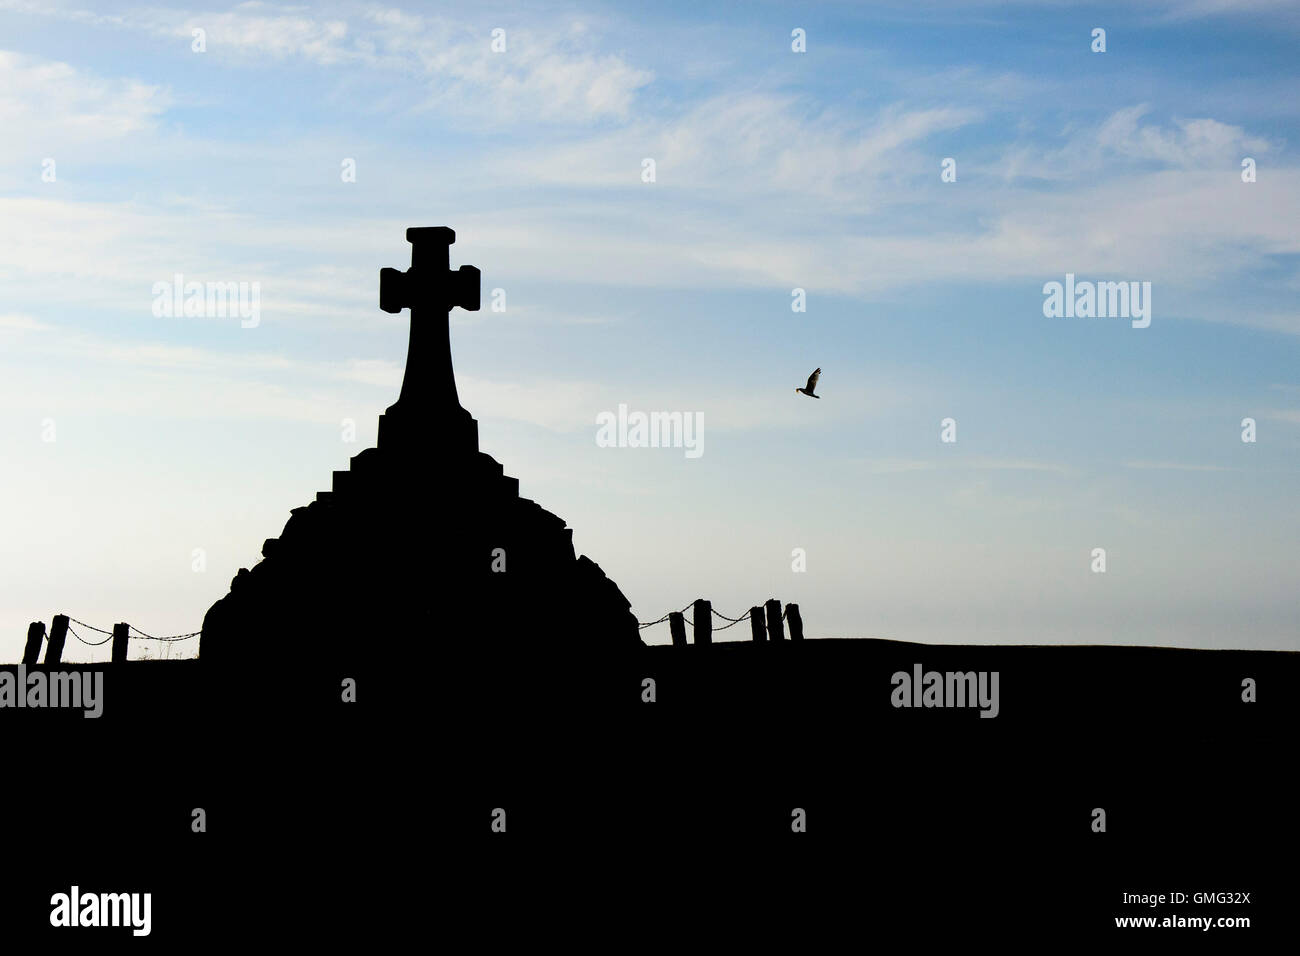 Le monument commémoratif de guerre Newquay vu en silhouette. Banque D'Images